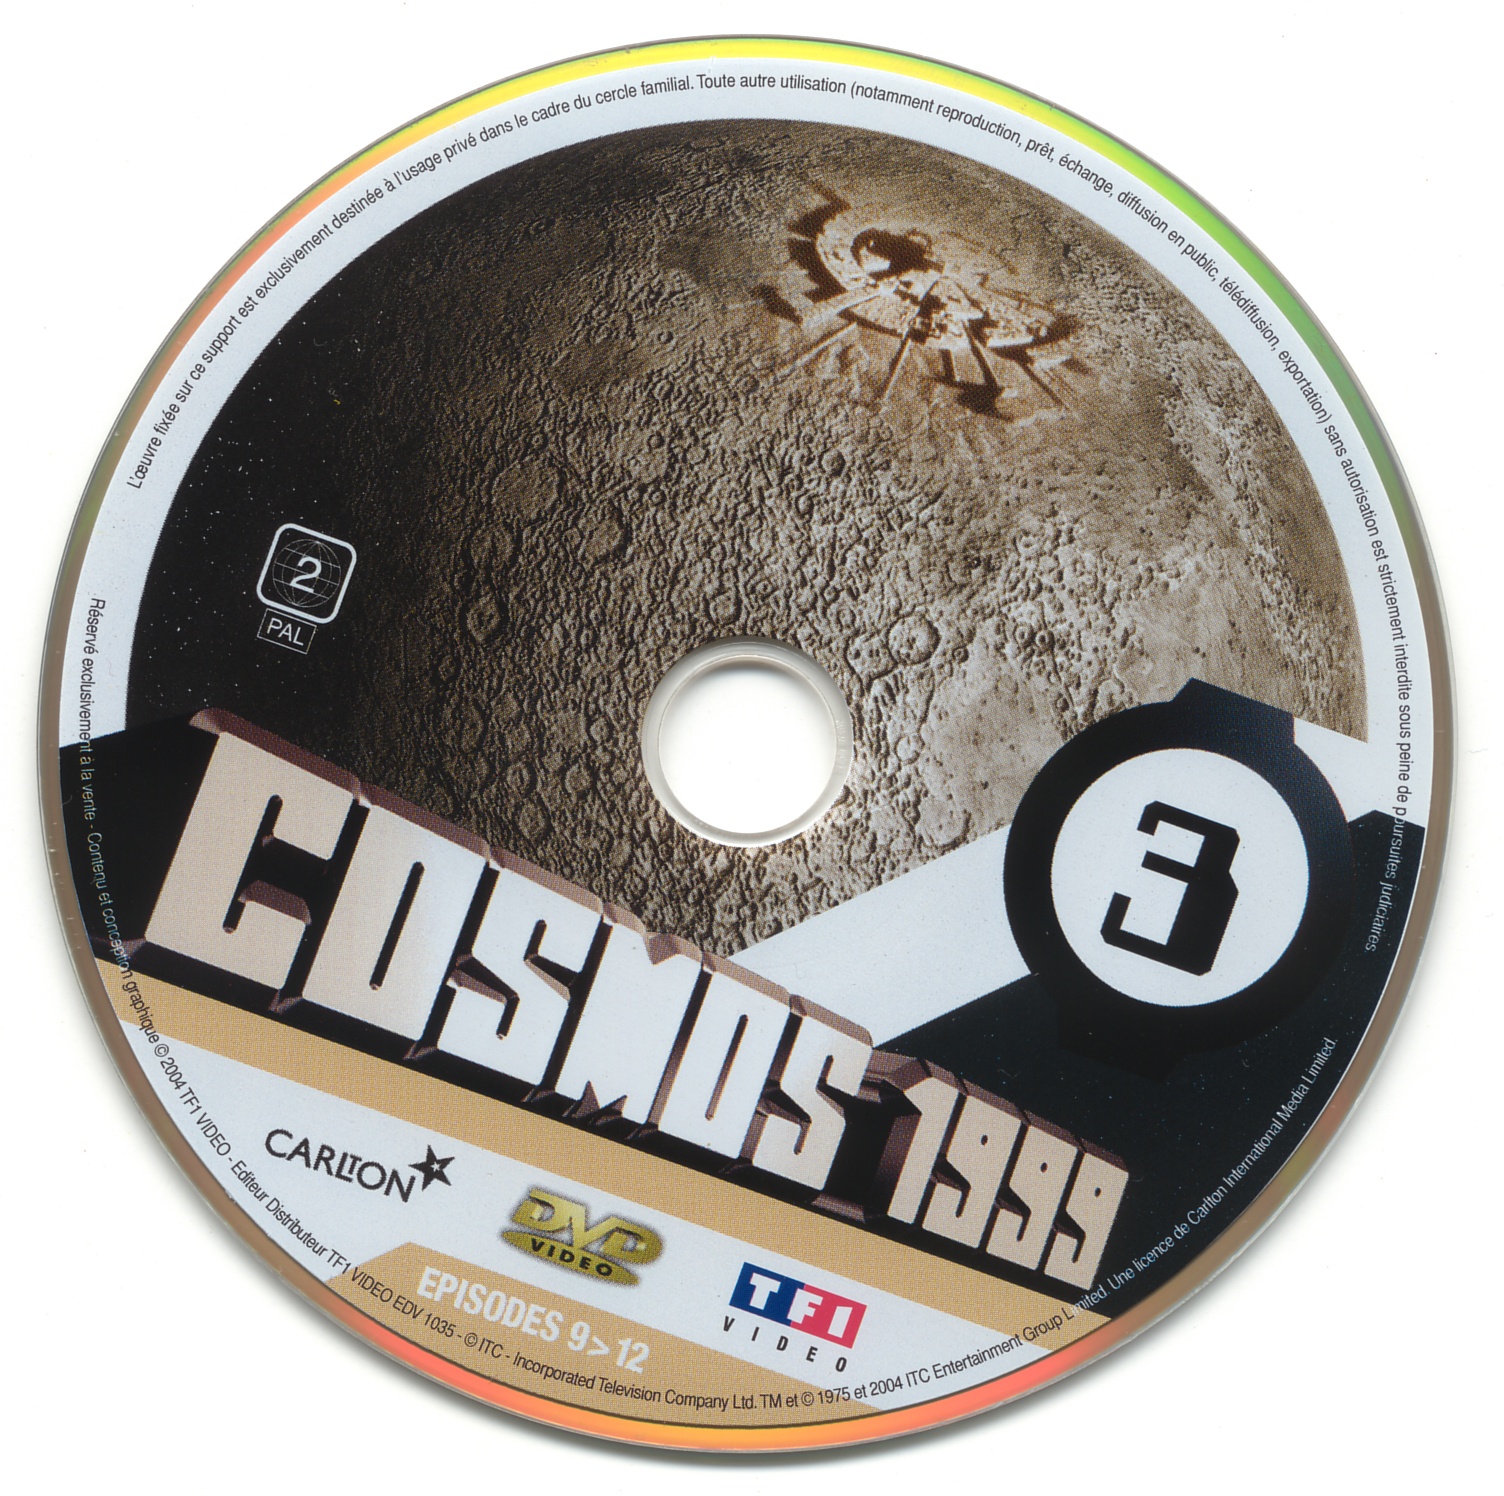 Cosmos 1999 saison 1 dvd 3